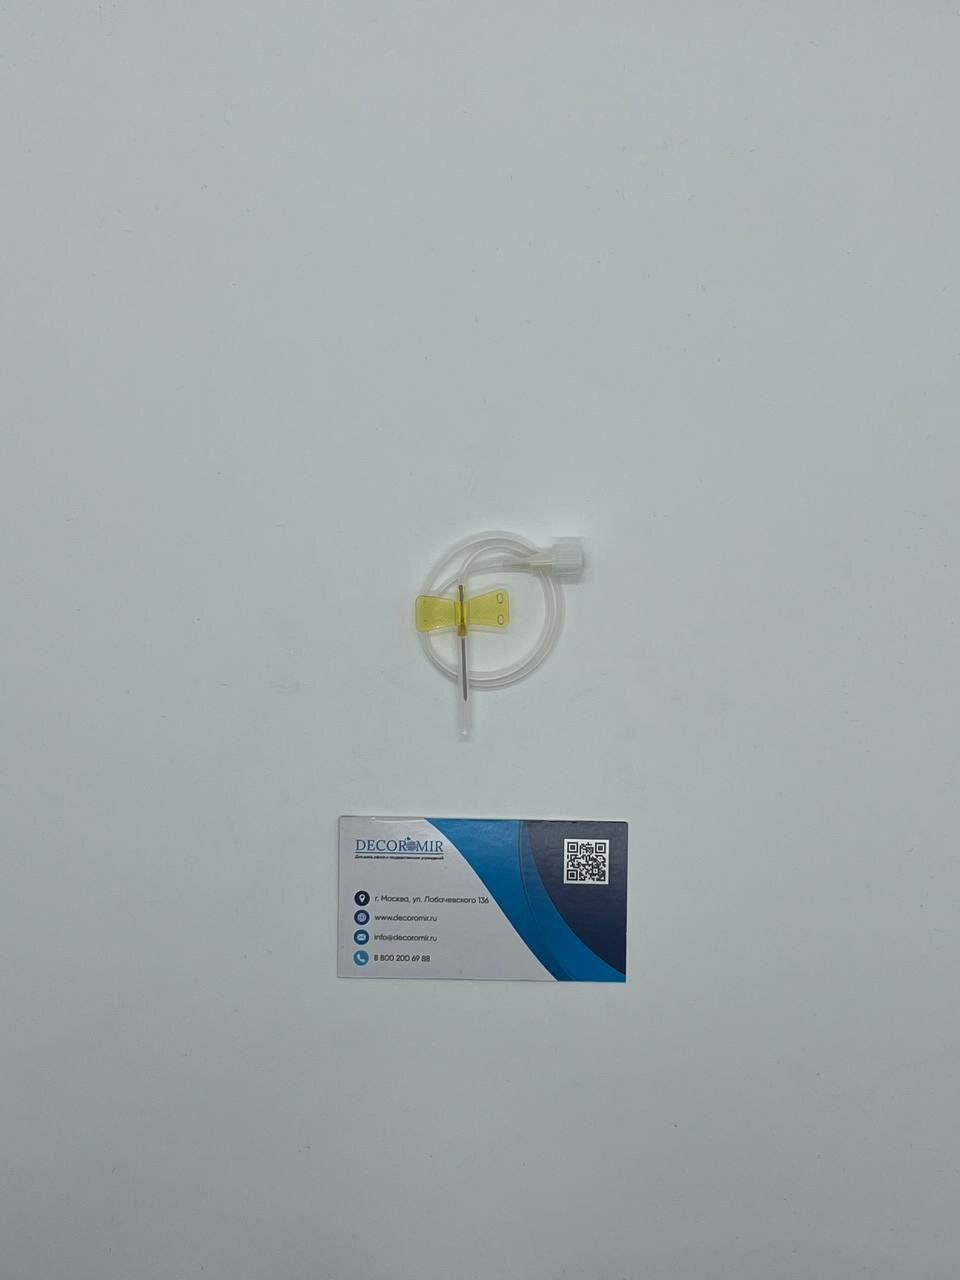 100 шт. 20G Канюля инфузионная жёлтый (Игла бабочка) Decoromir стерильная